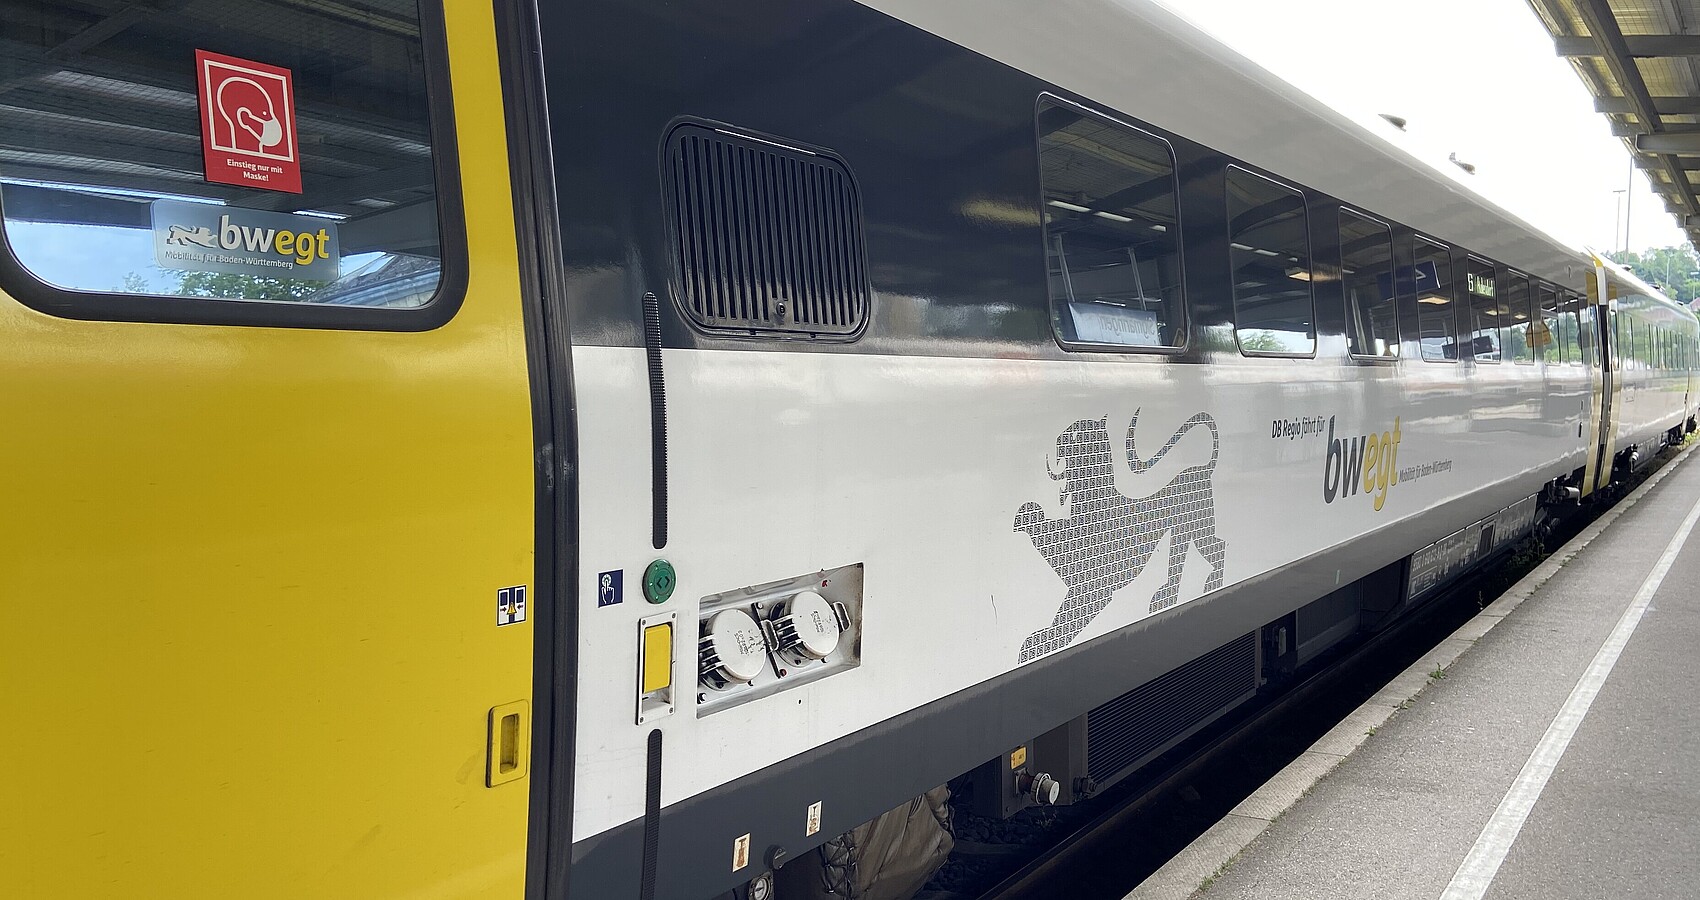 Gelb-schwarzer Wagon des Nahverkehrs steht in einem Bahnhof